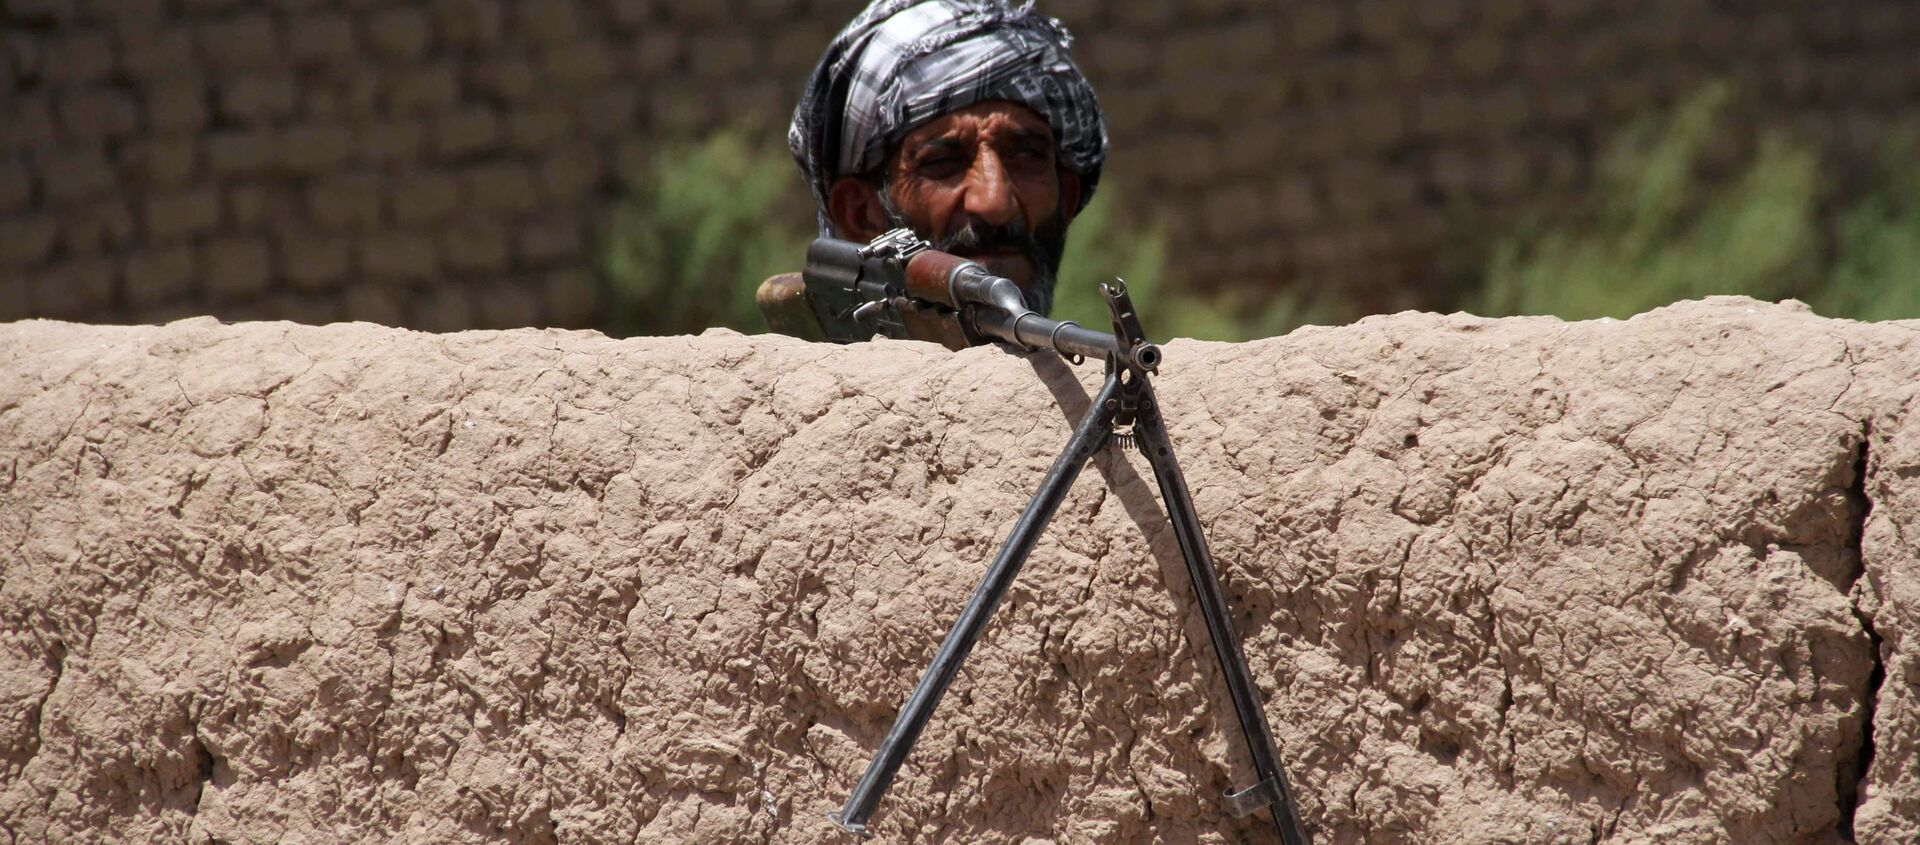 Một cựu Mujahideen (hoặc mujahidin, chiến binh thánh chiến Hồi giáo) đang trong ca trực trạm kiểm soát ở ngoại vi tỉnh Herat, Afghanistan - Sputnik Việt Nam, 1920, 09.08.2021